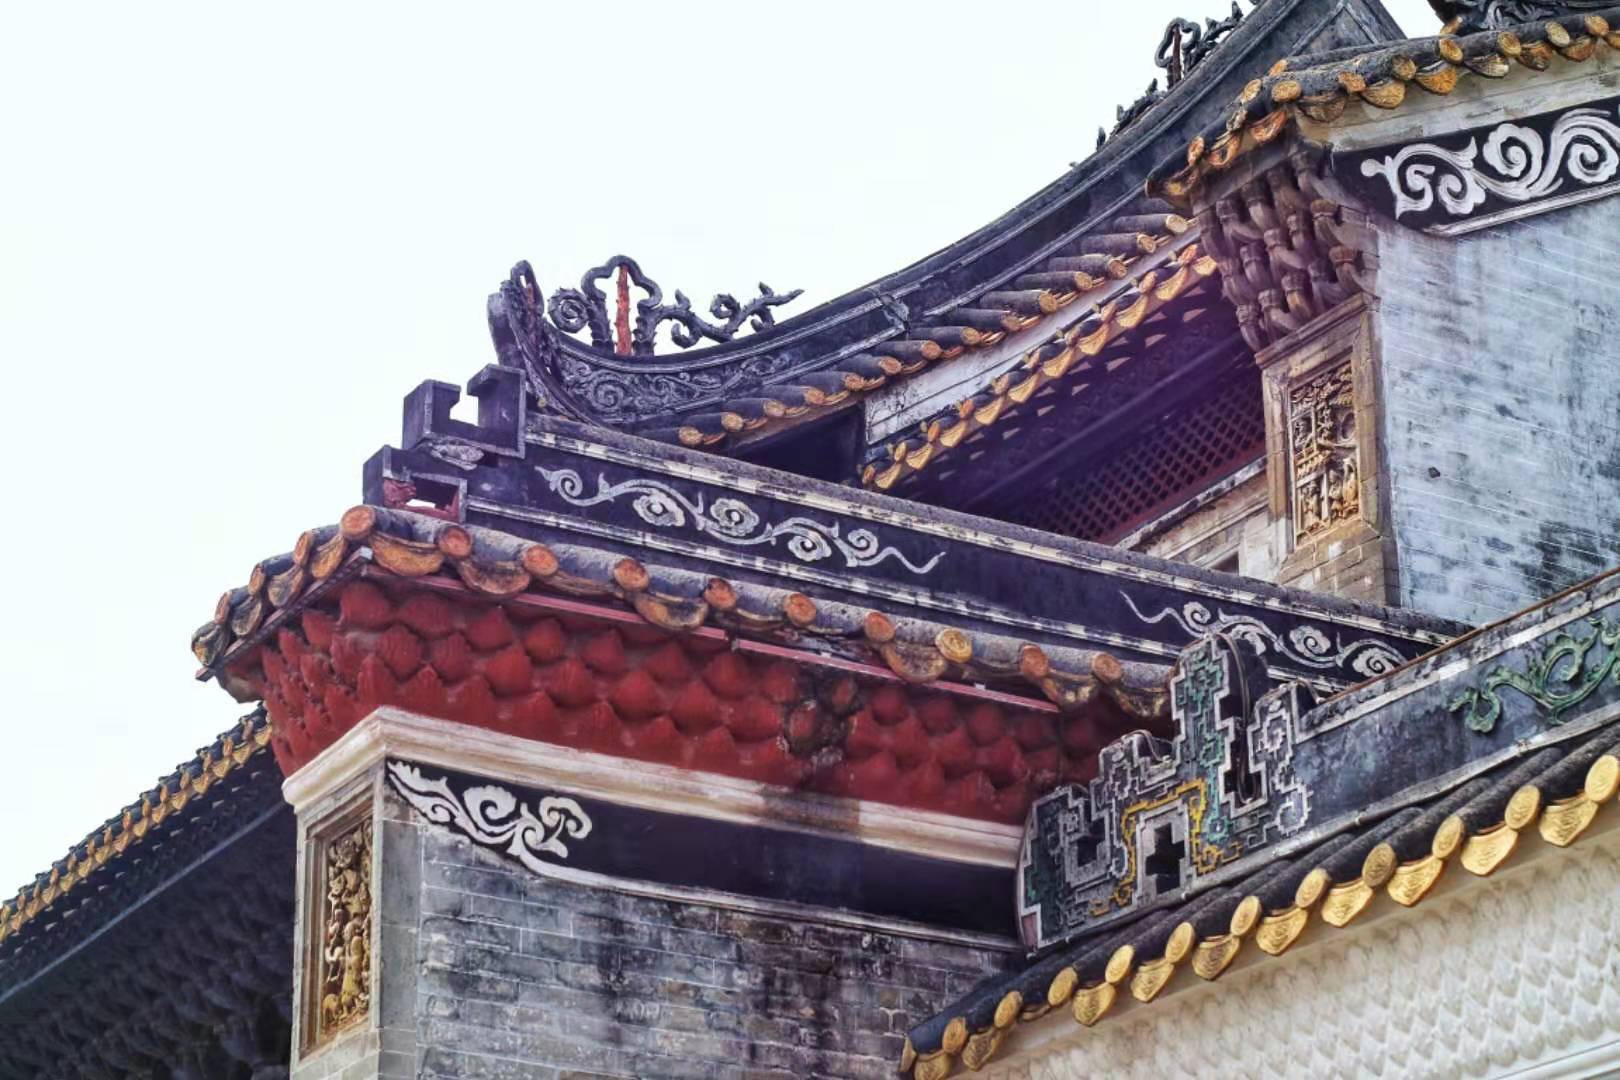 广州这座百年历史古镇,距今已有800多年,一起感受岭南建筑特色